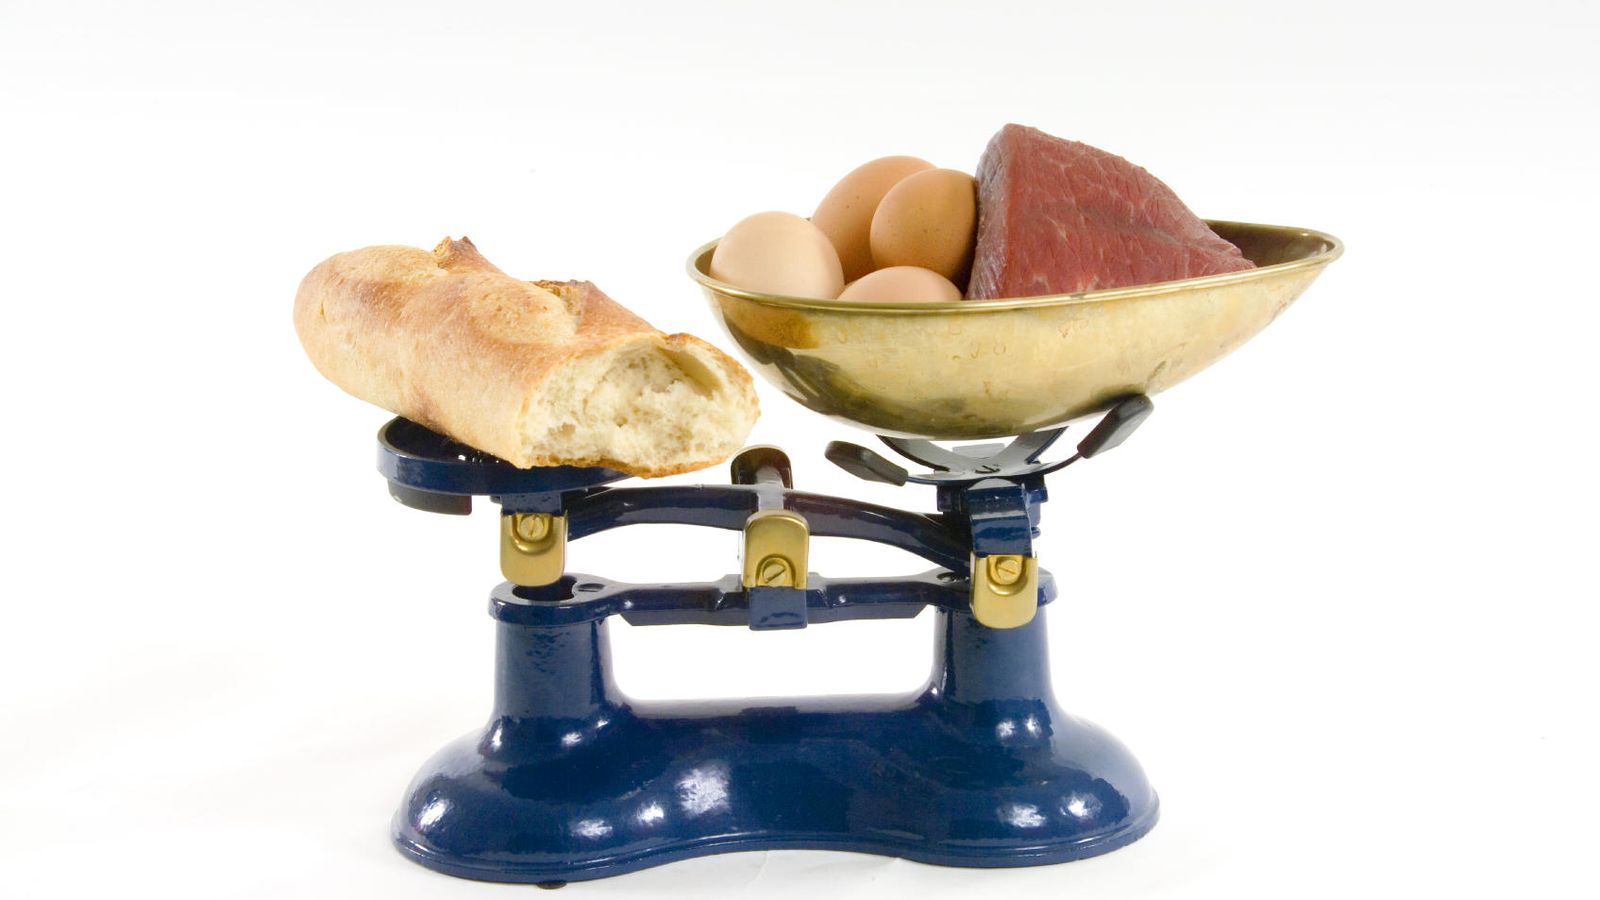 Foto: Sí, abusar del pan es peor que consumir huevos o carne a diario. (IStock)